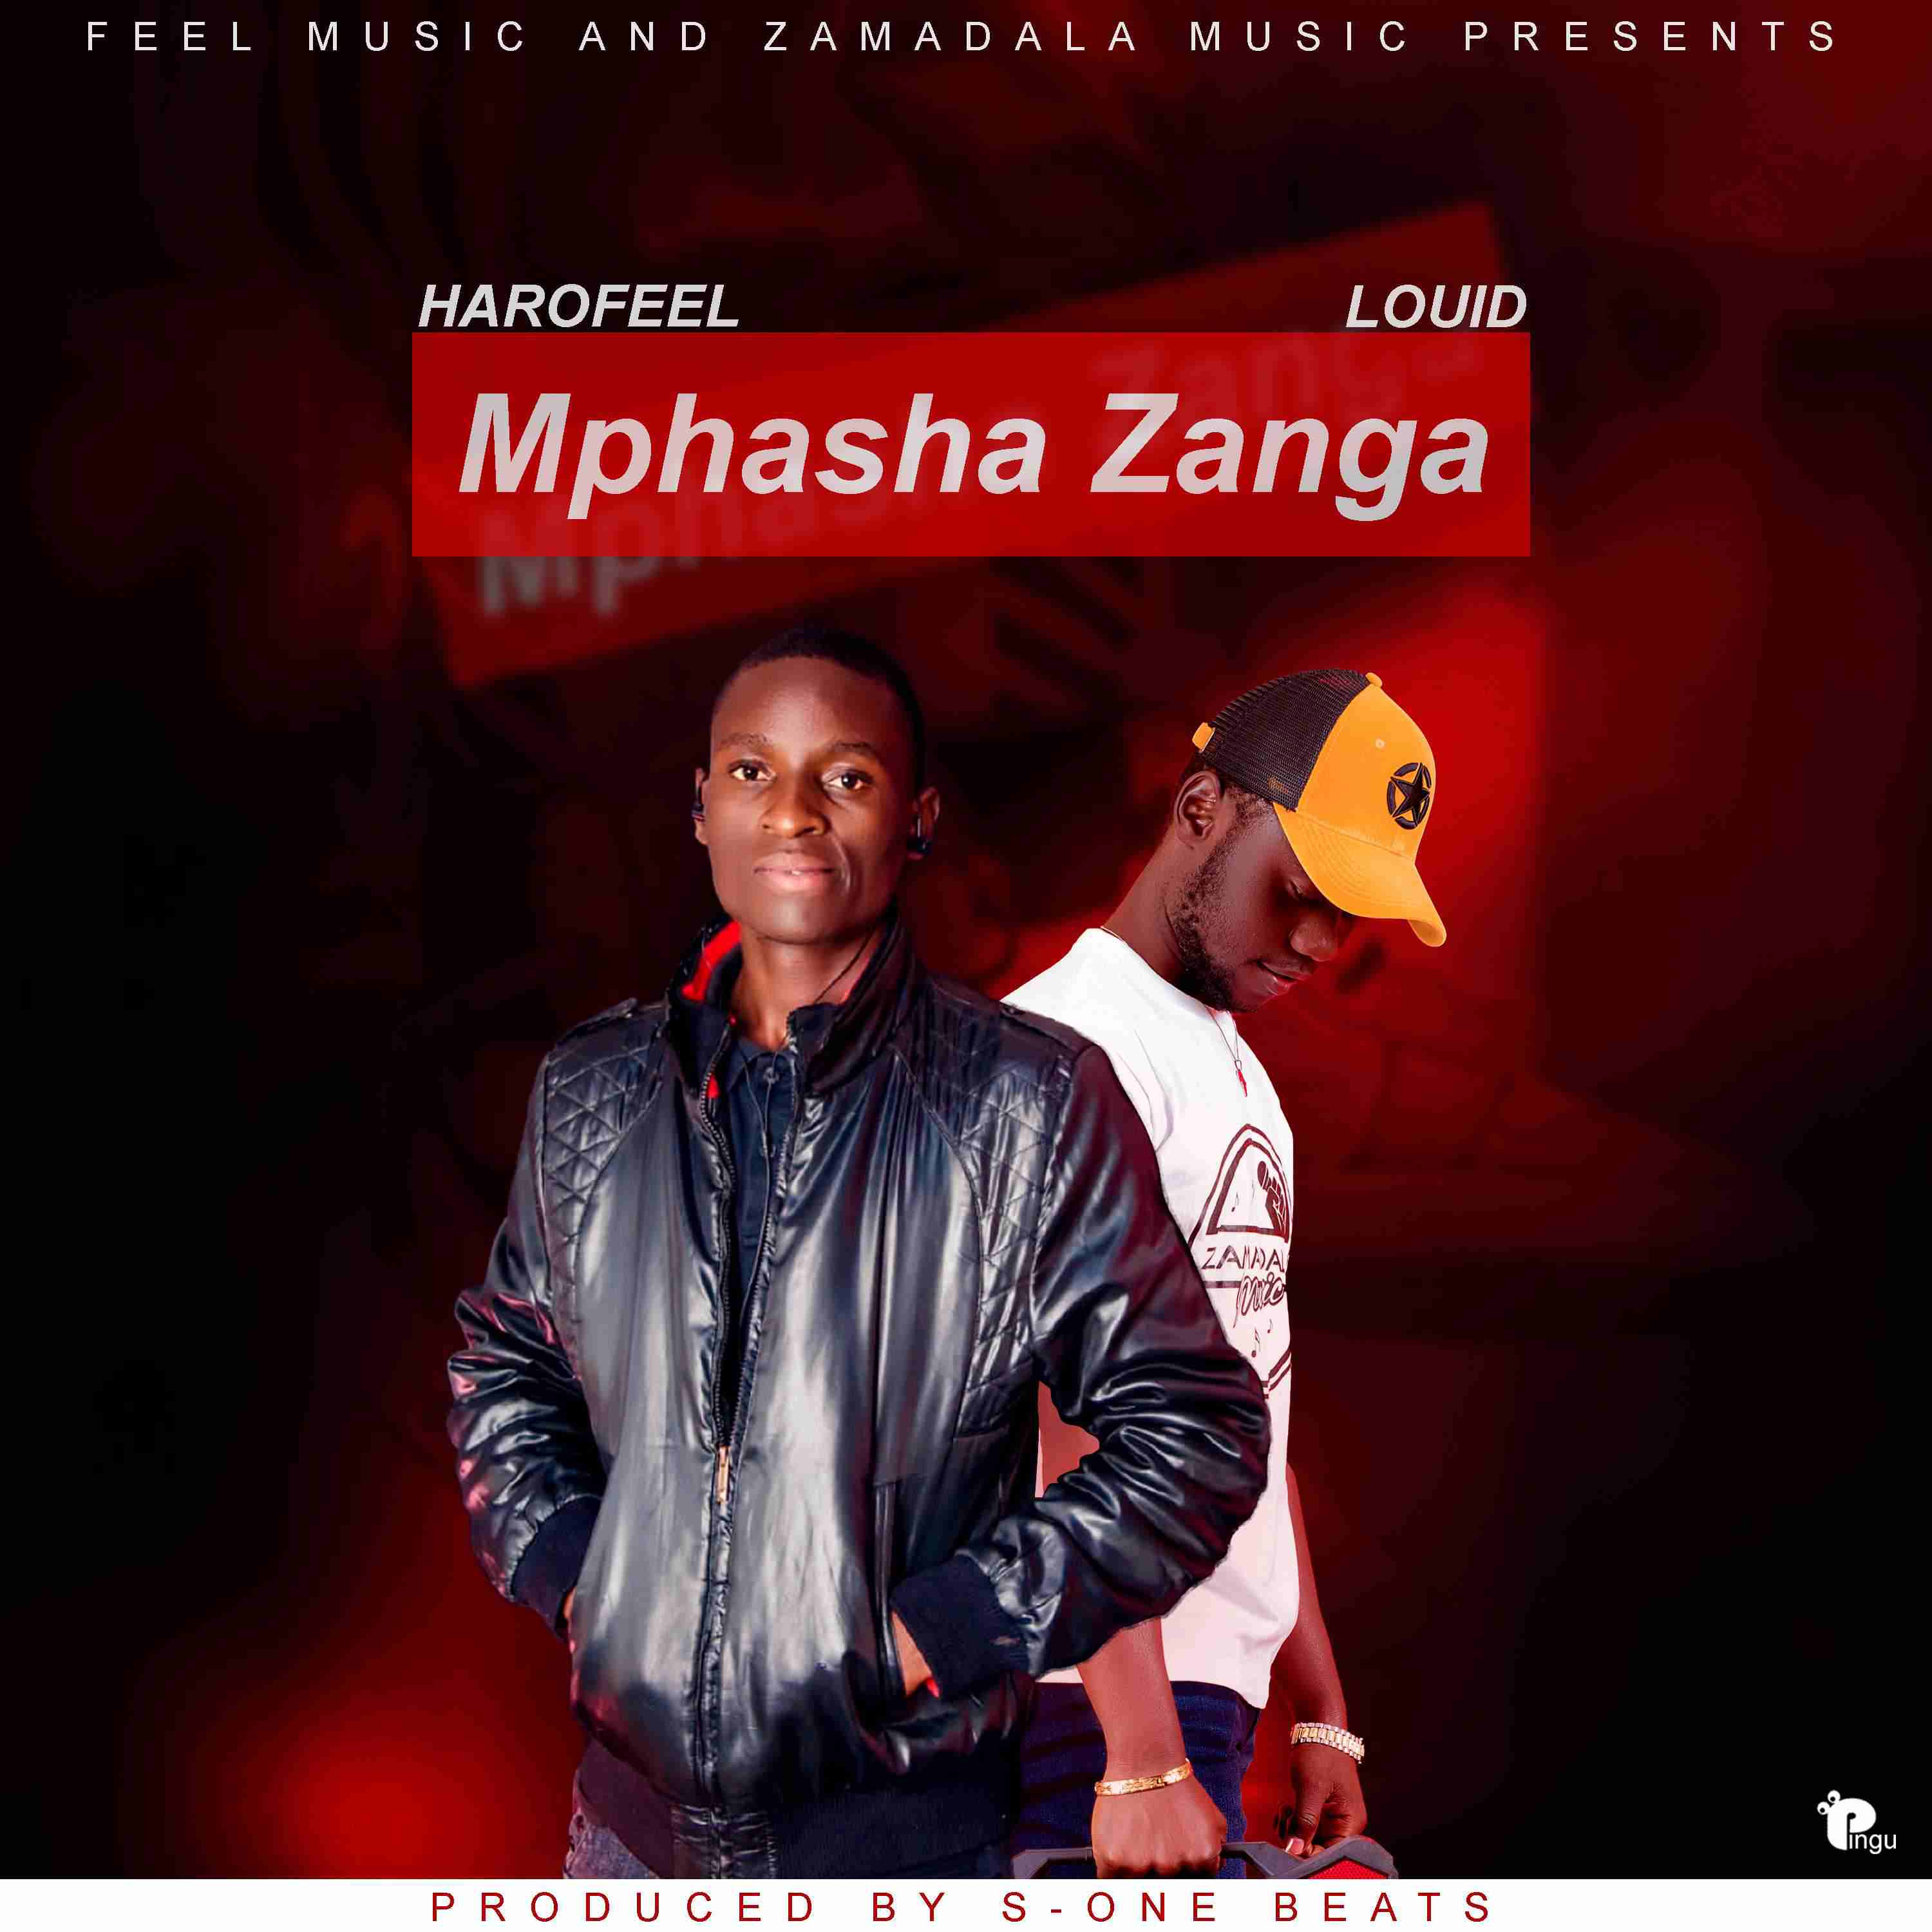 Mphasha zanga